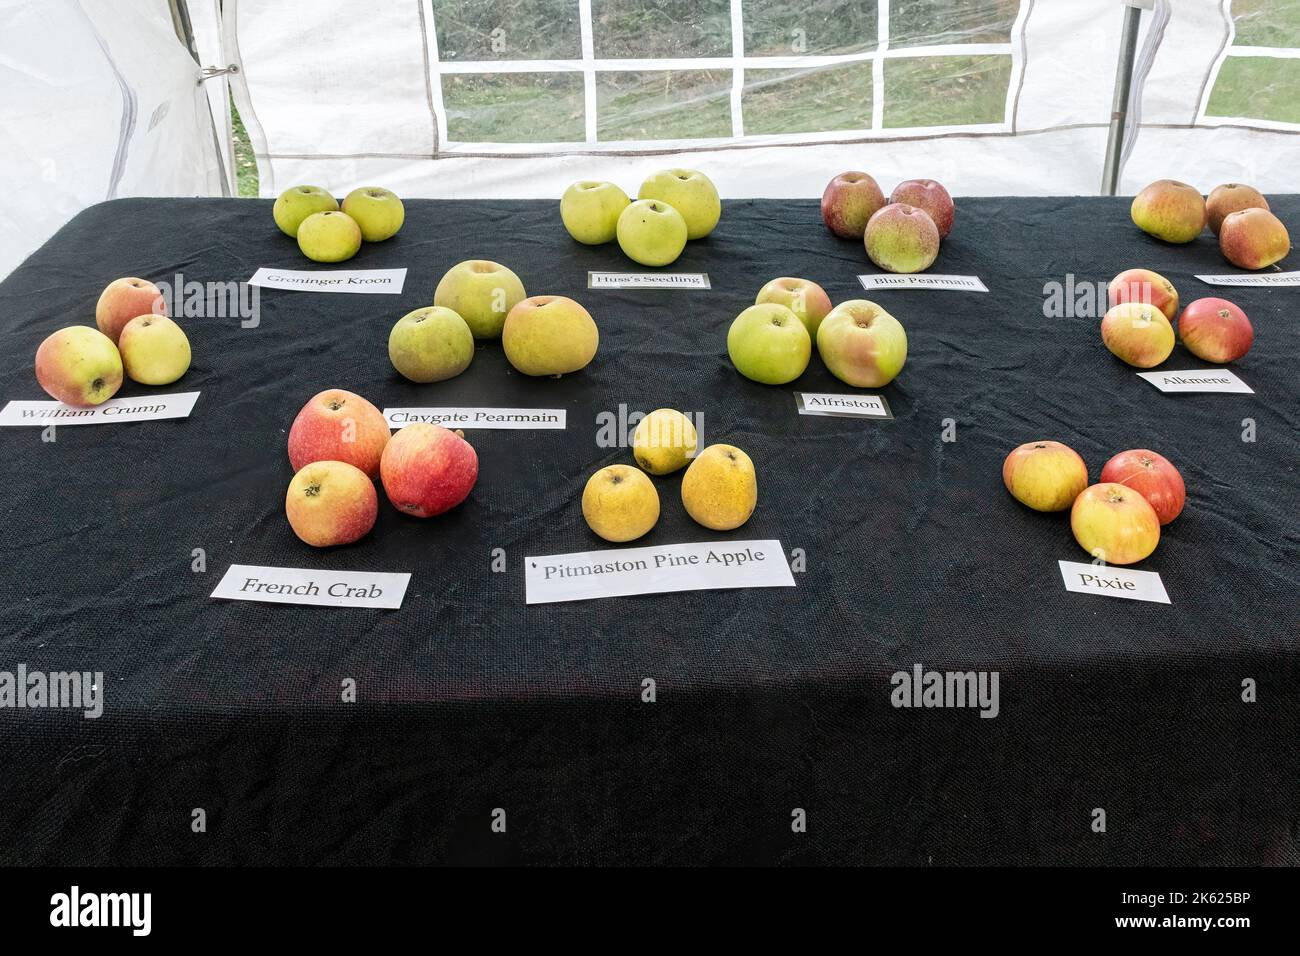 Blackmoor Apple Tasting Day, eine jährliche Herbstveranstaltung im Dorf Hampshire, England, im Oktober. Apfelsorten auf dem Display. Stockfoto